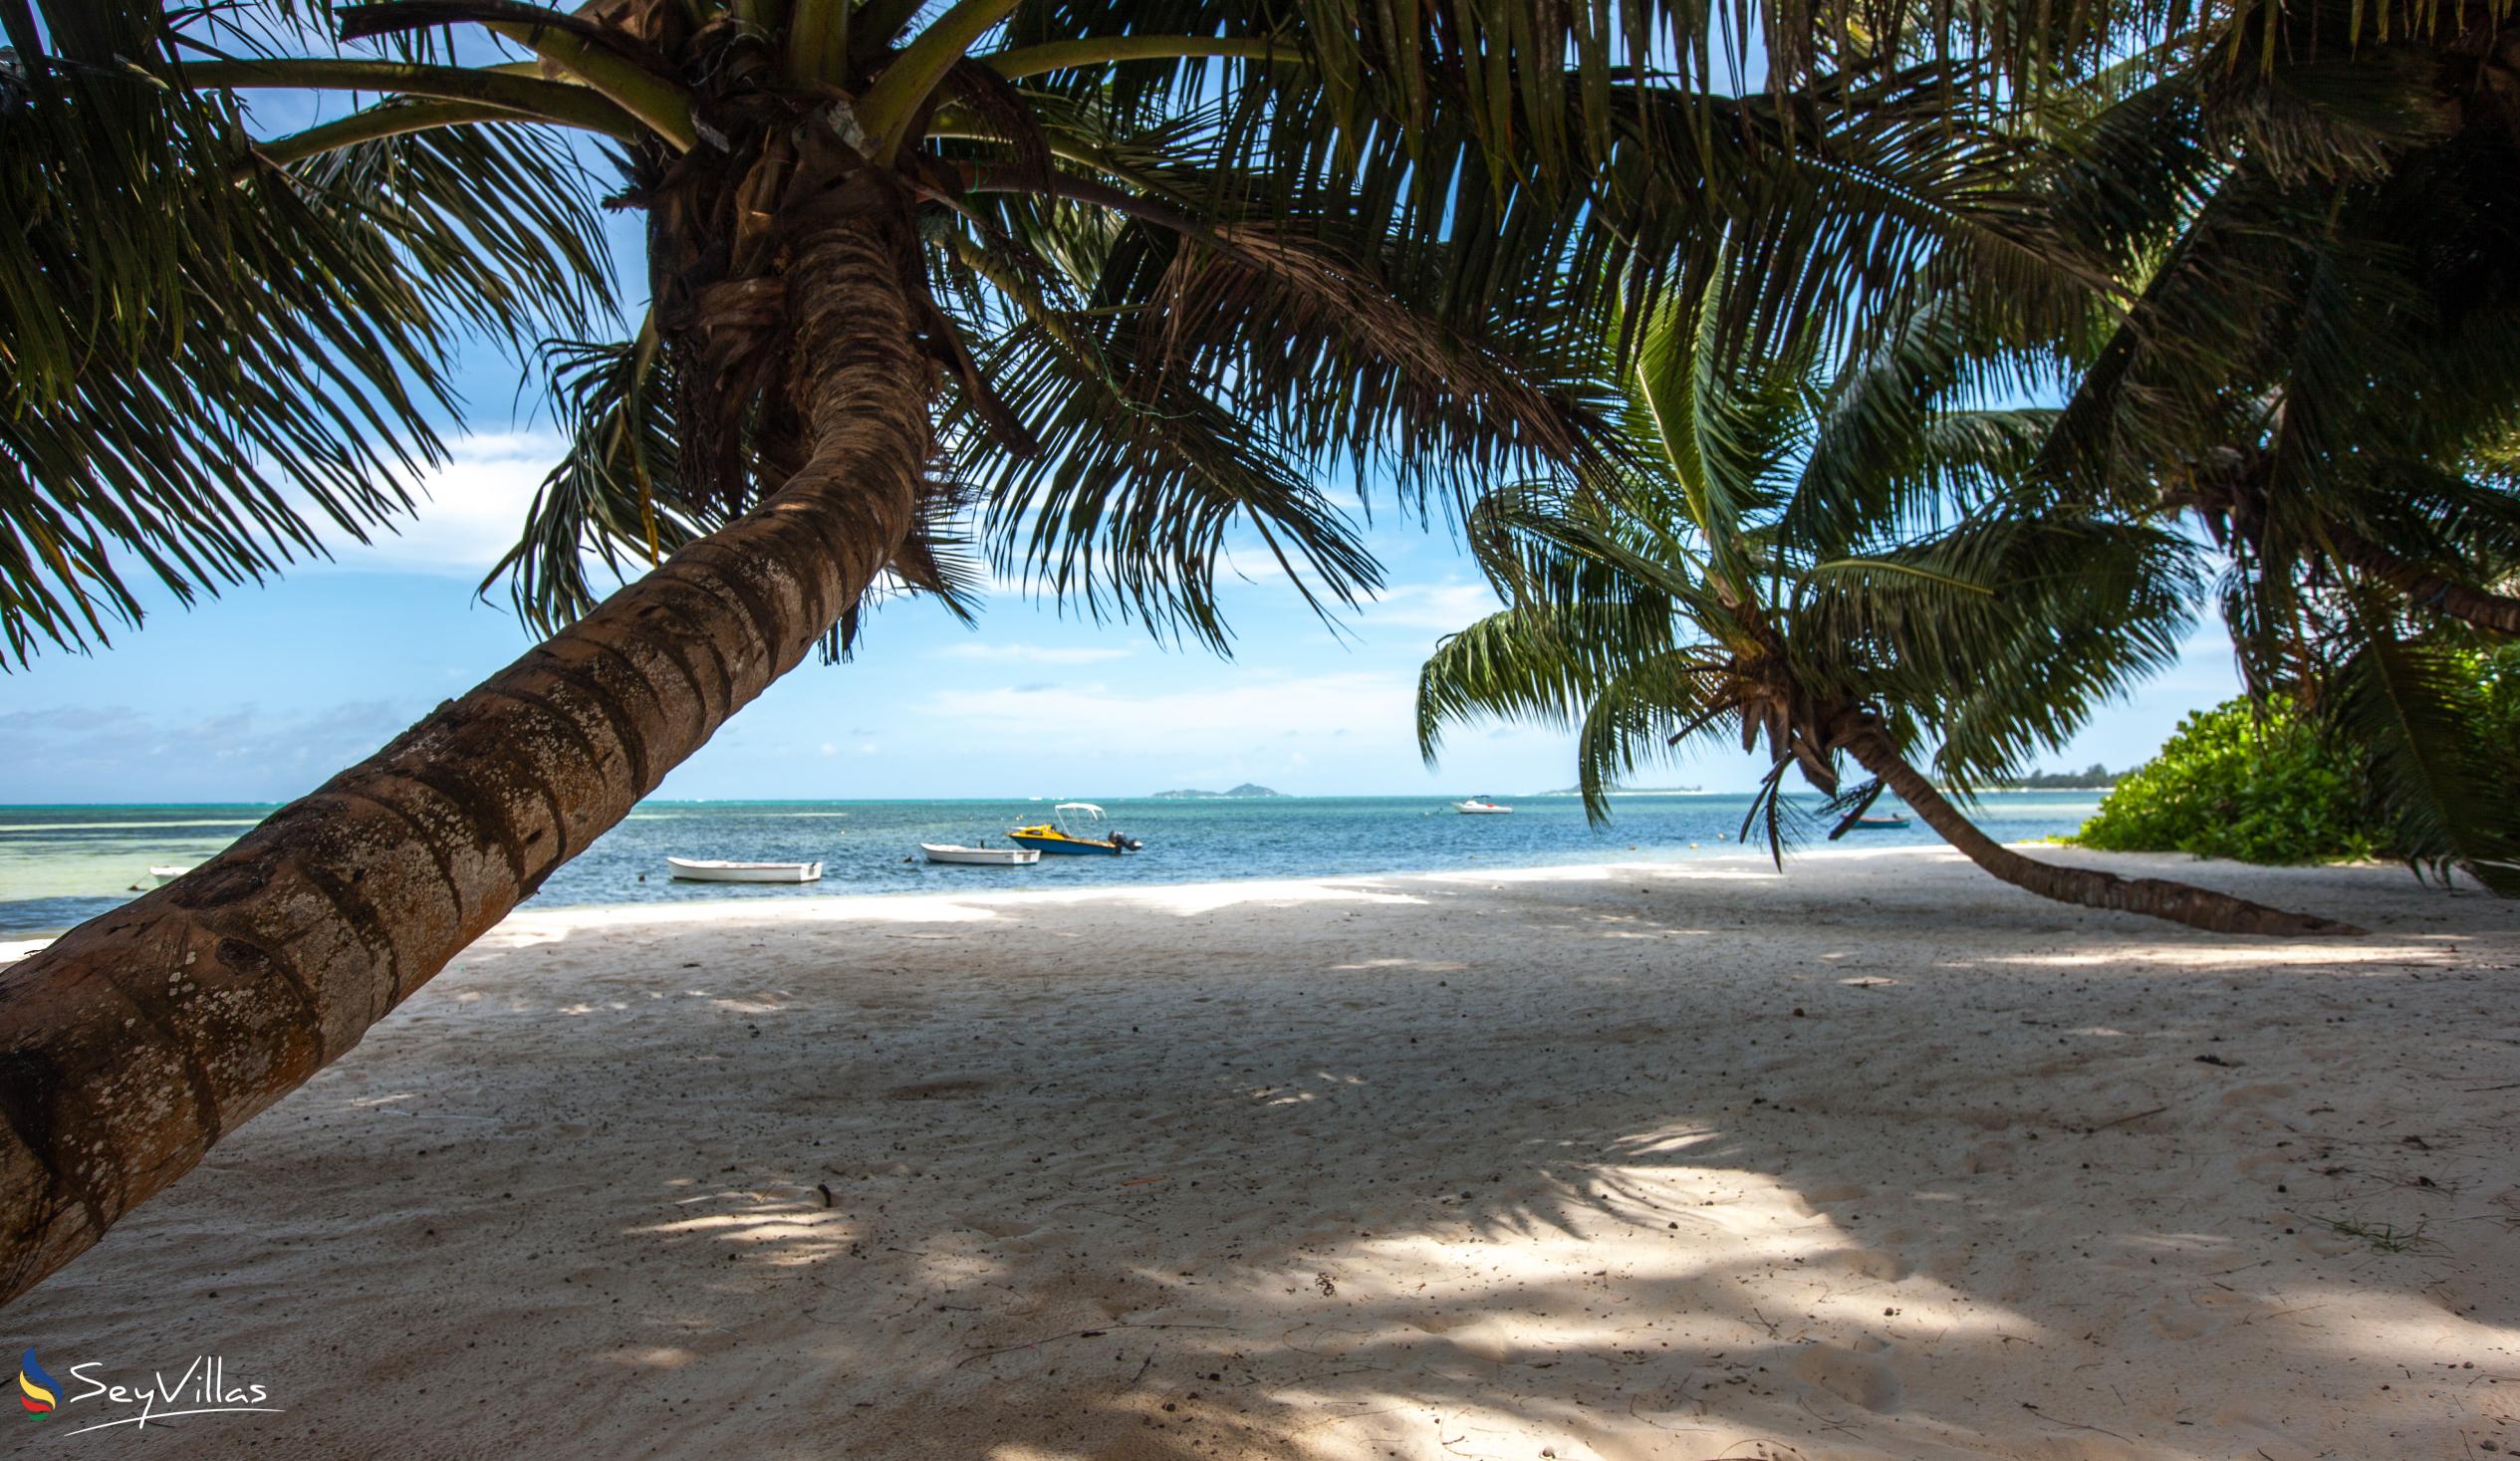 Foto 68: Le Relax Beach Resort - Strände - Praslin (Seychellen)